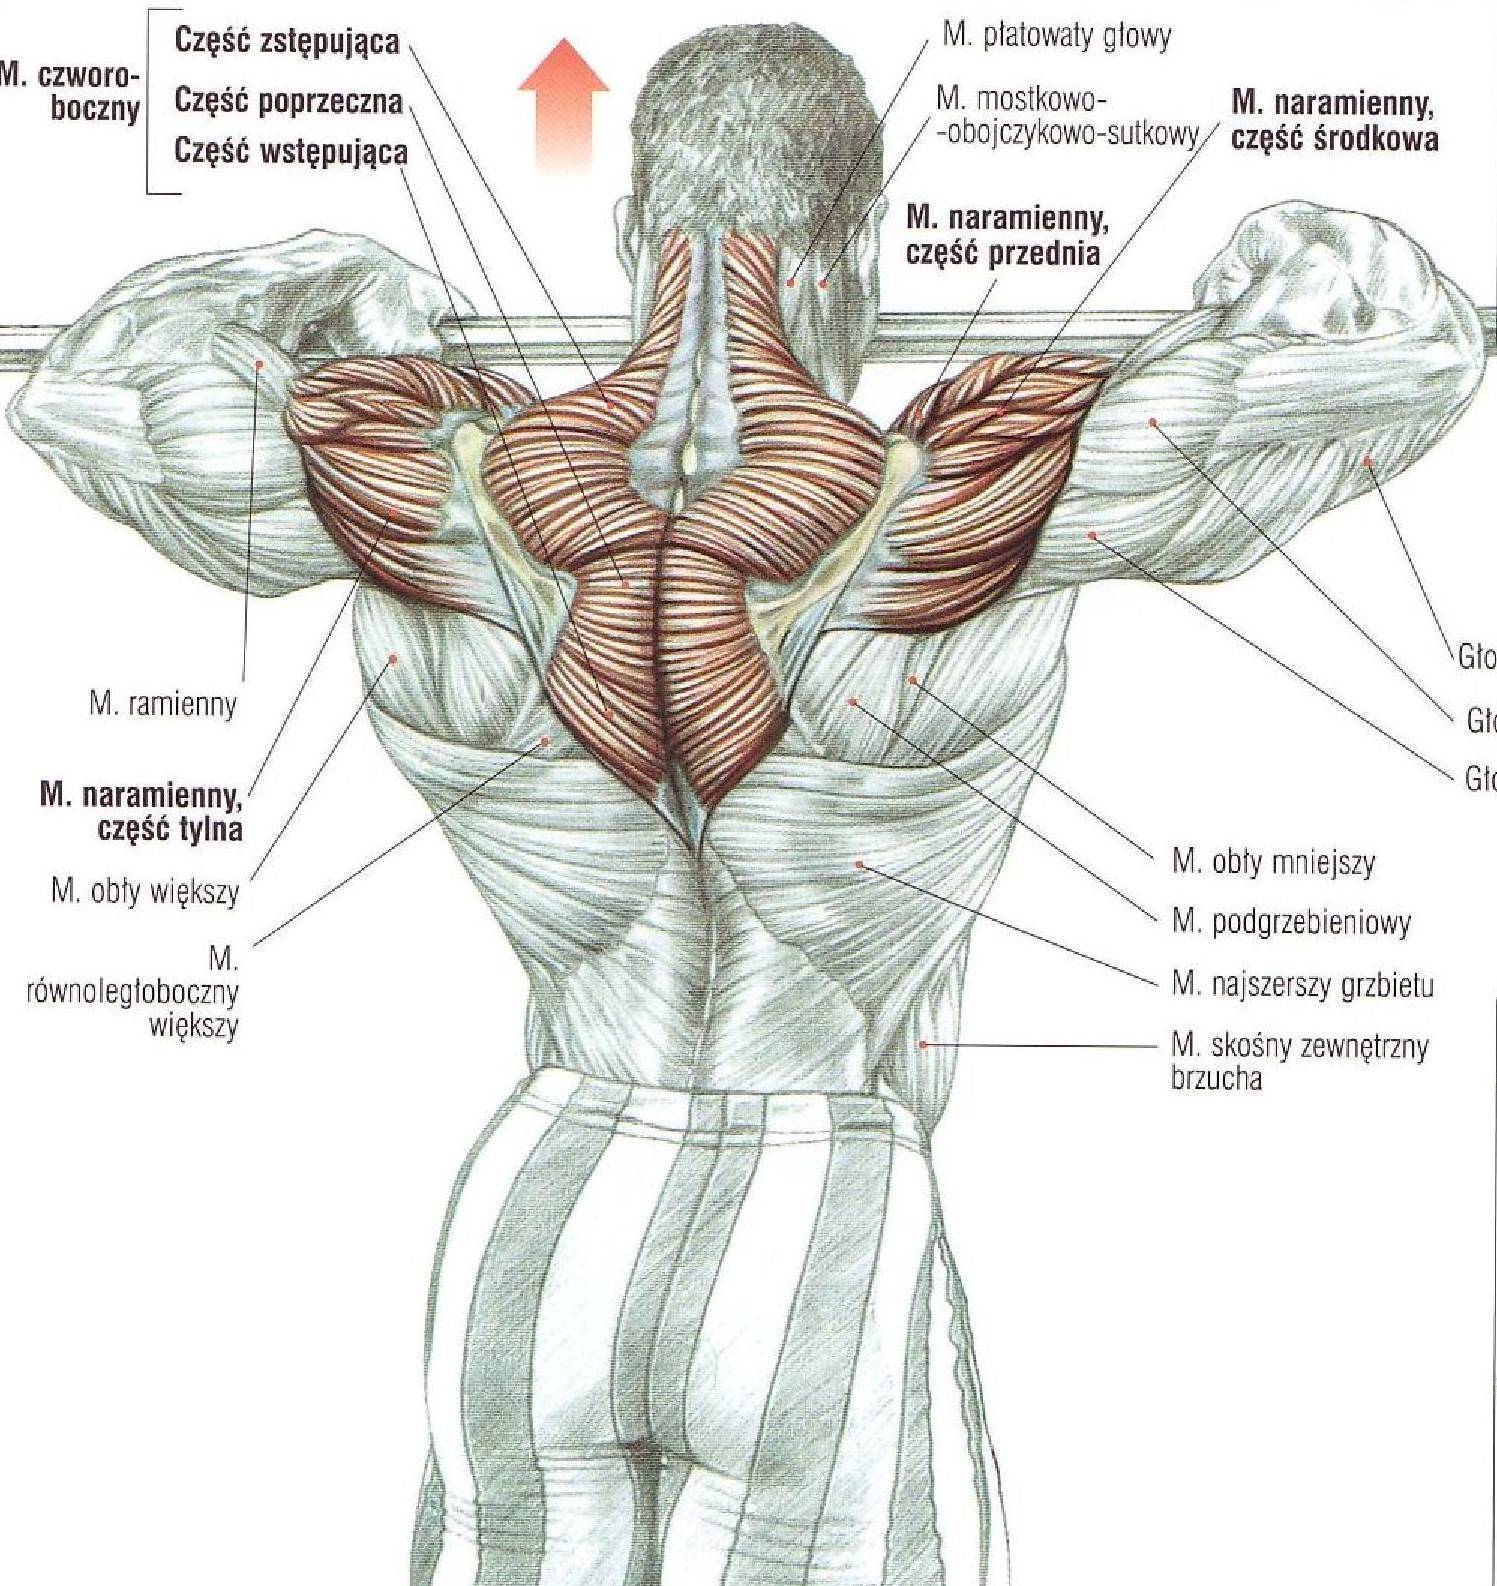 Упражнения на трапециевидную мышцу спины с гантелями для женщин